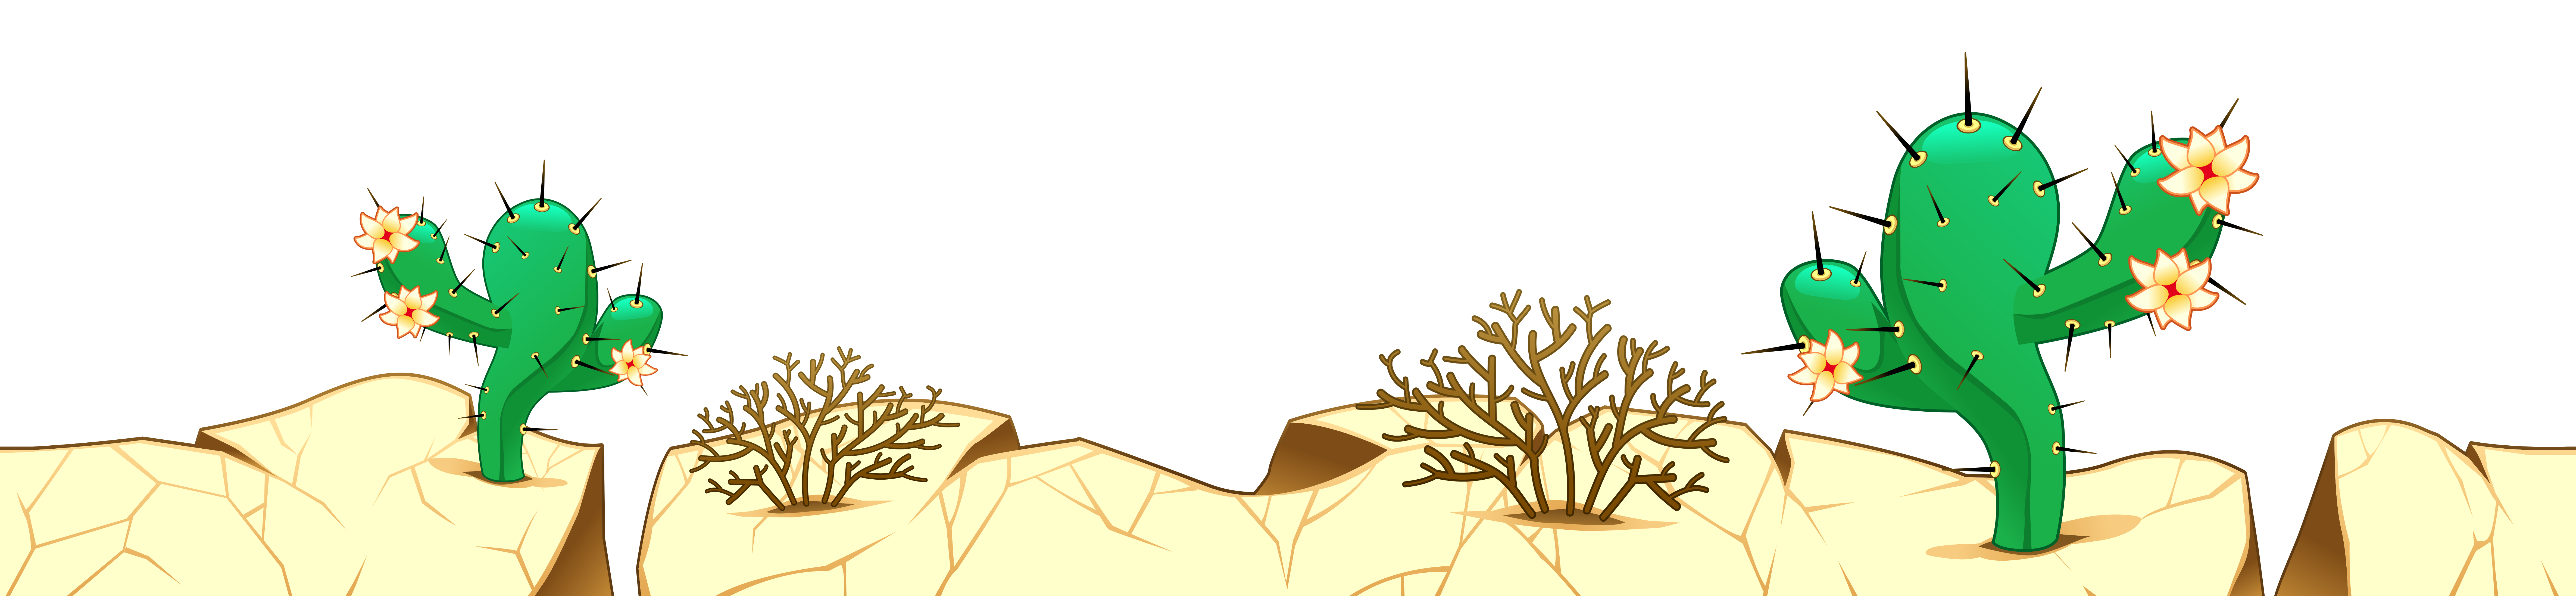 Desert clipart desert.